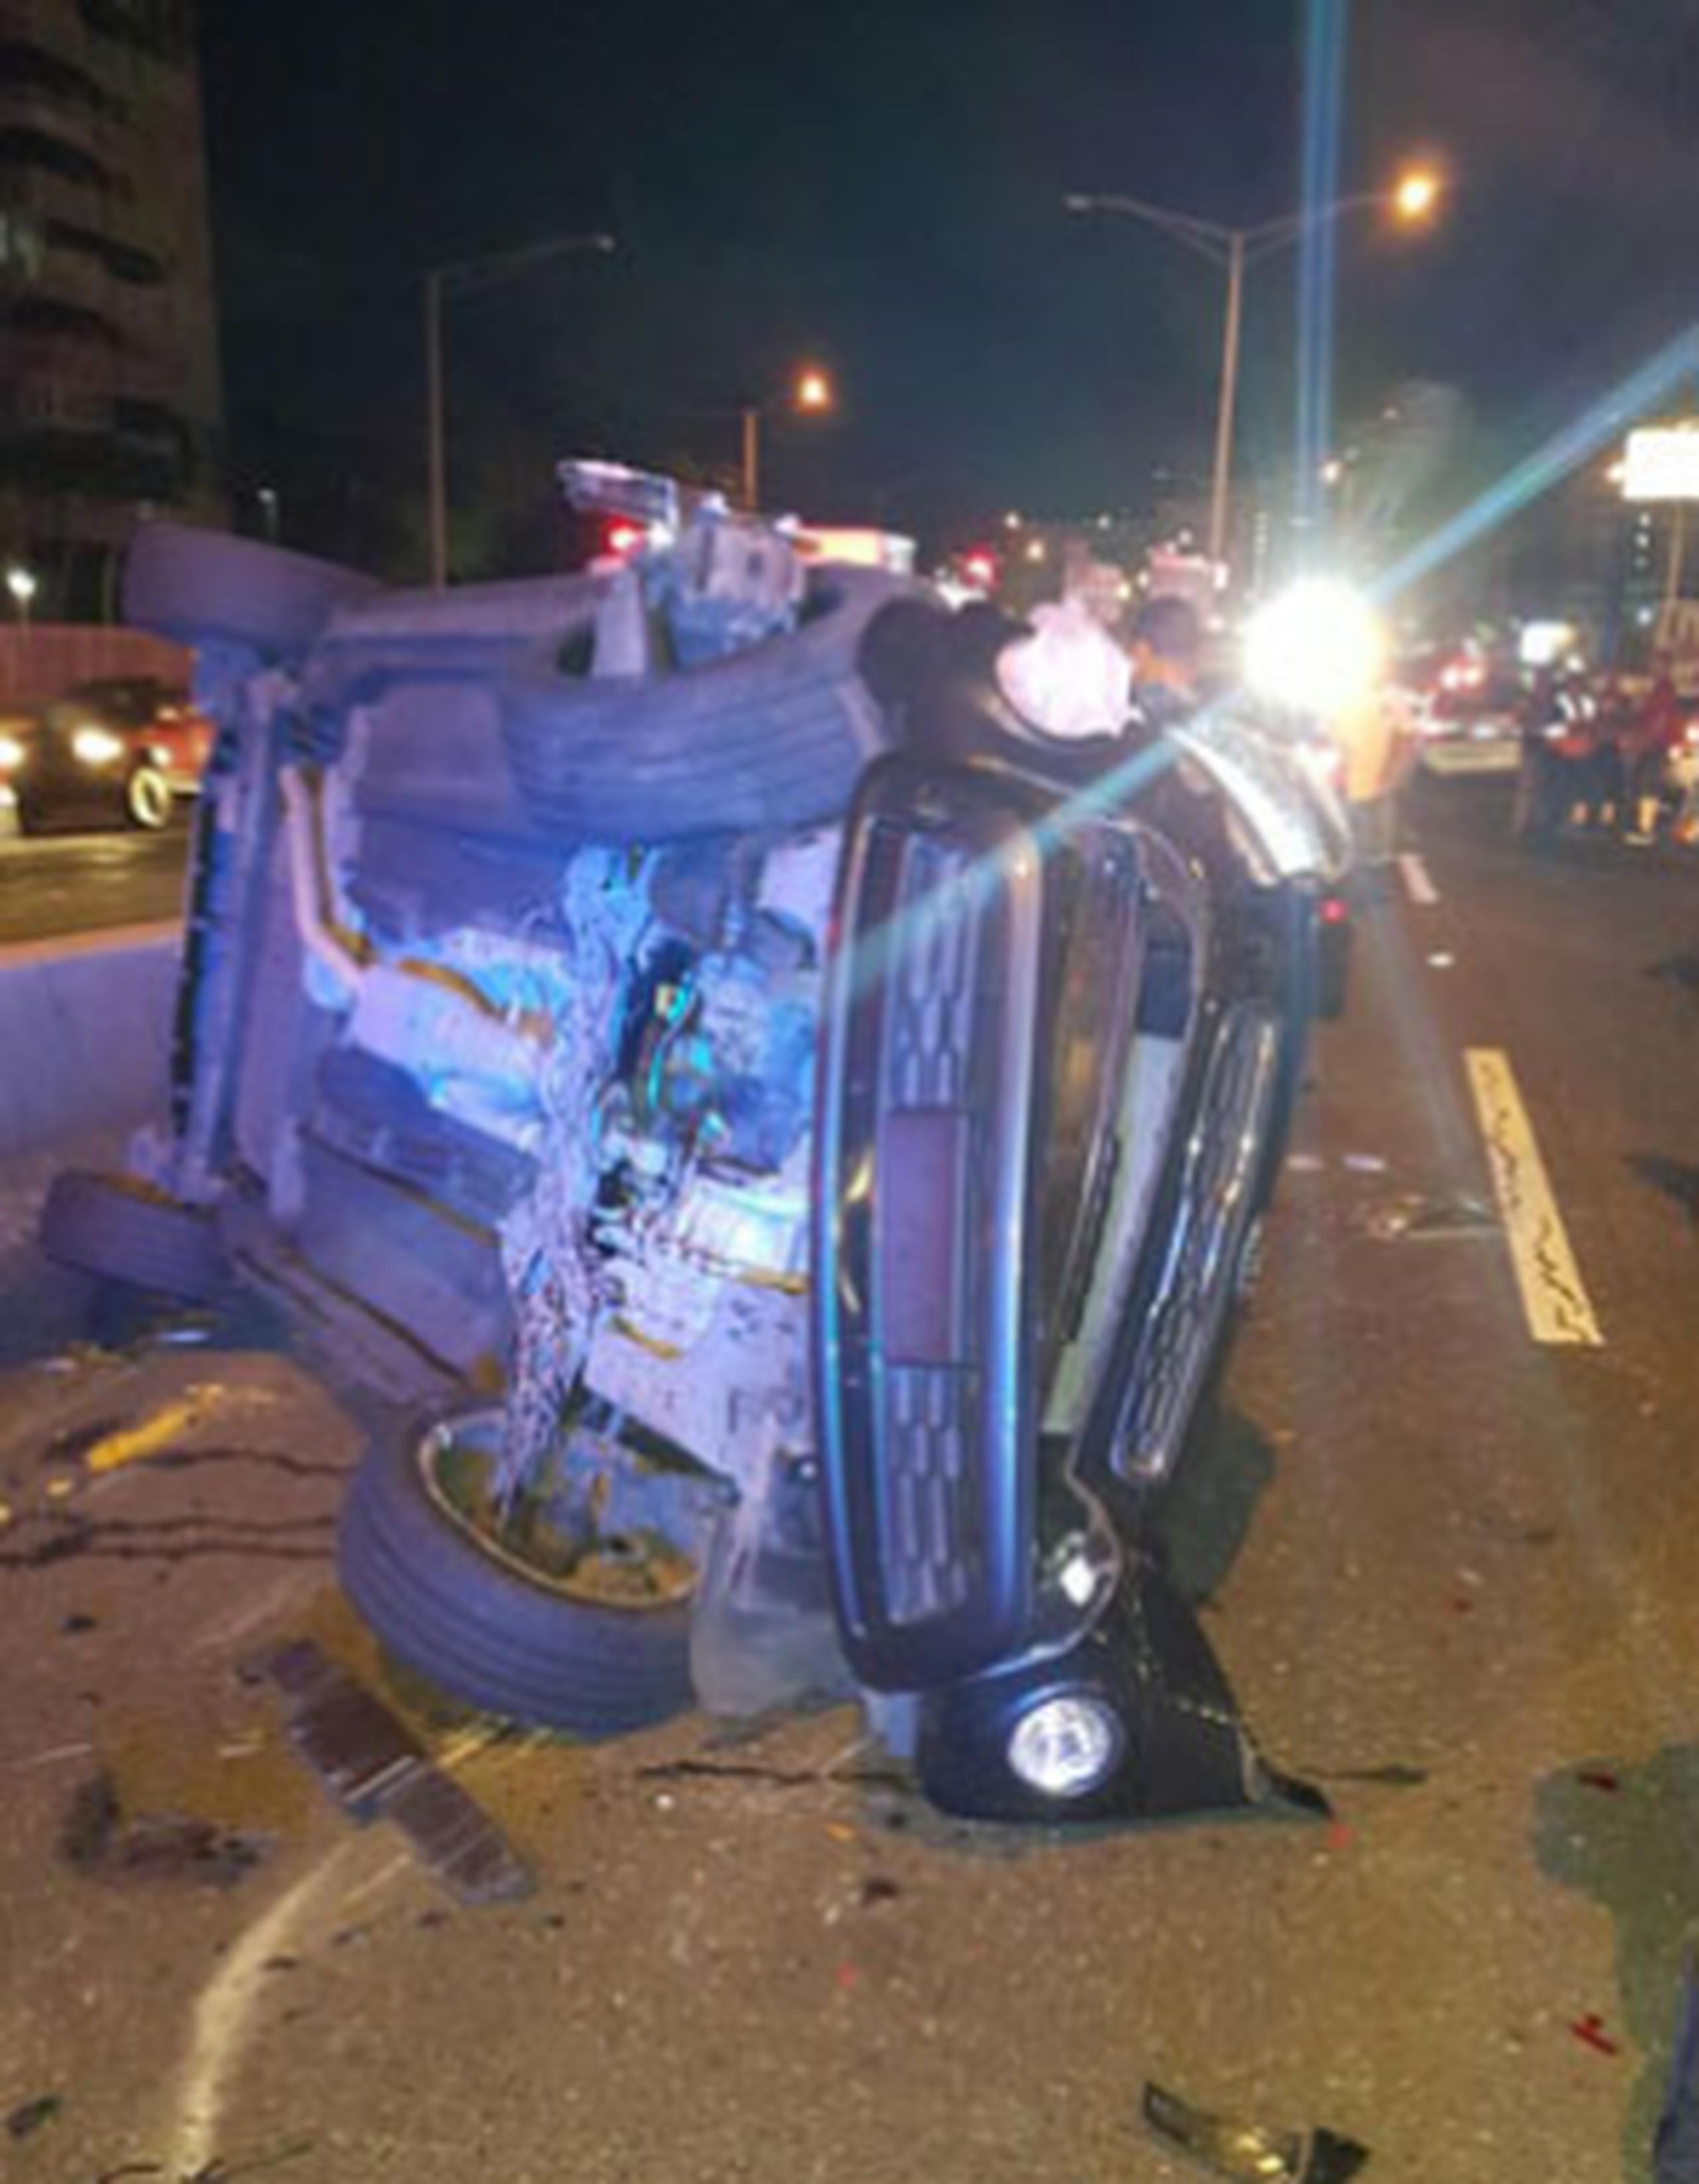 Durante la persecución el automóvil se volcó tras impactar cuatro vehículos. (Suministrada)